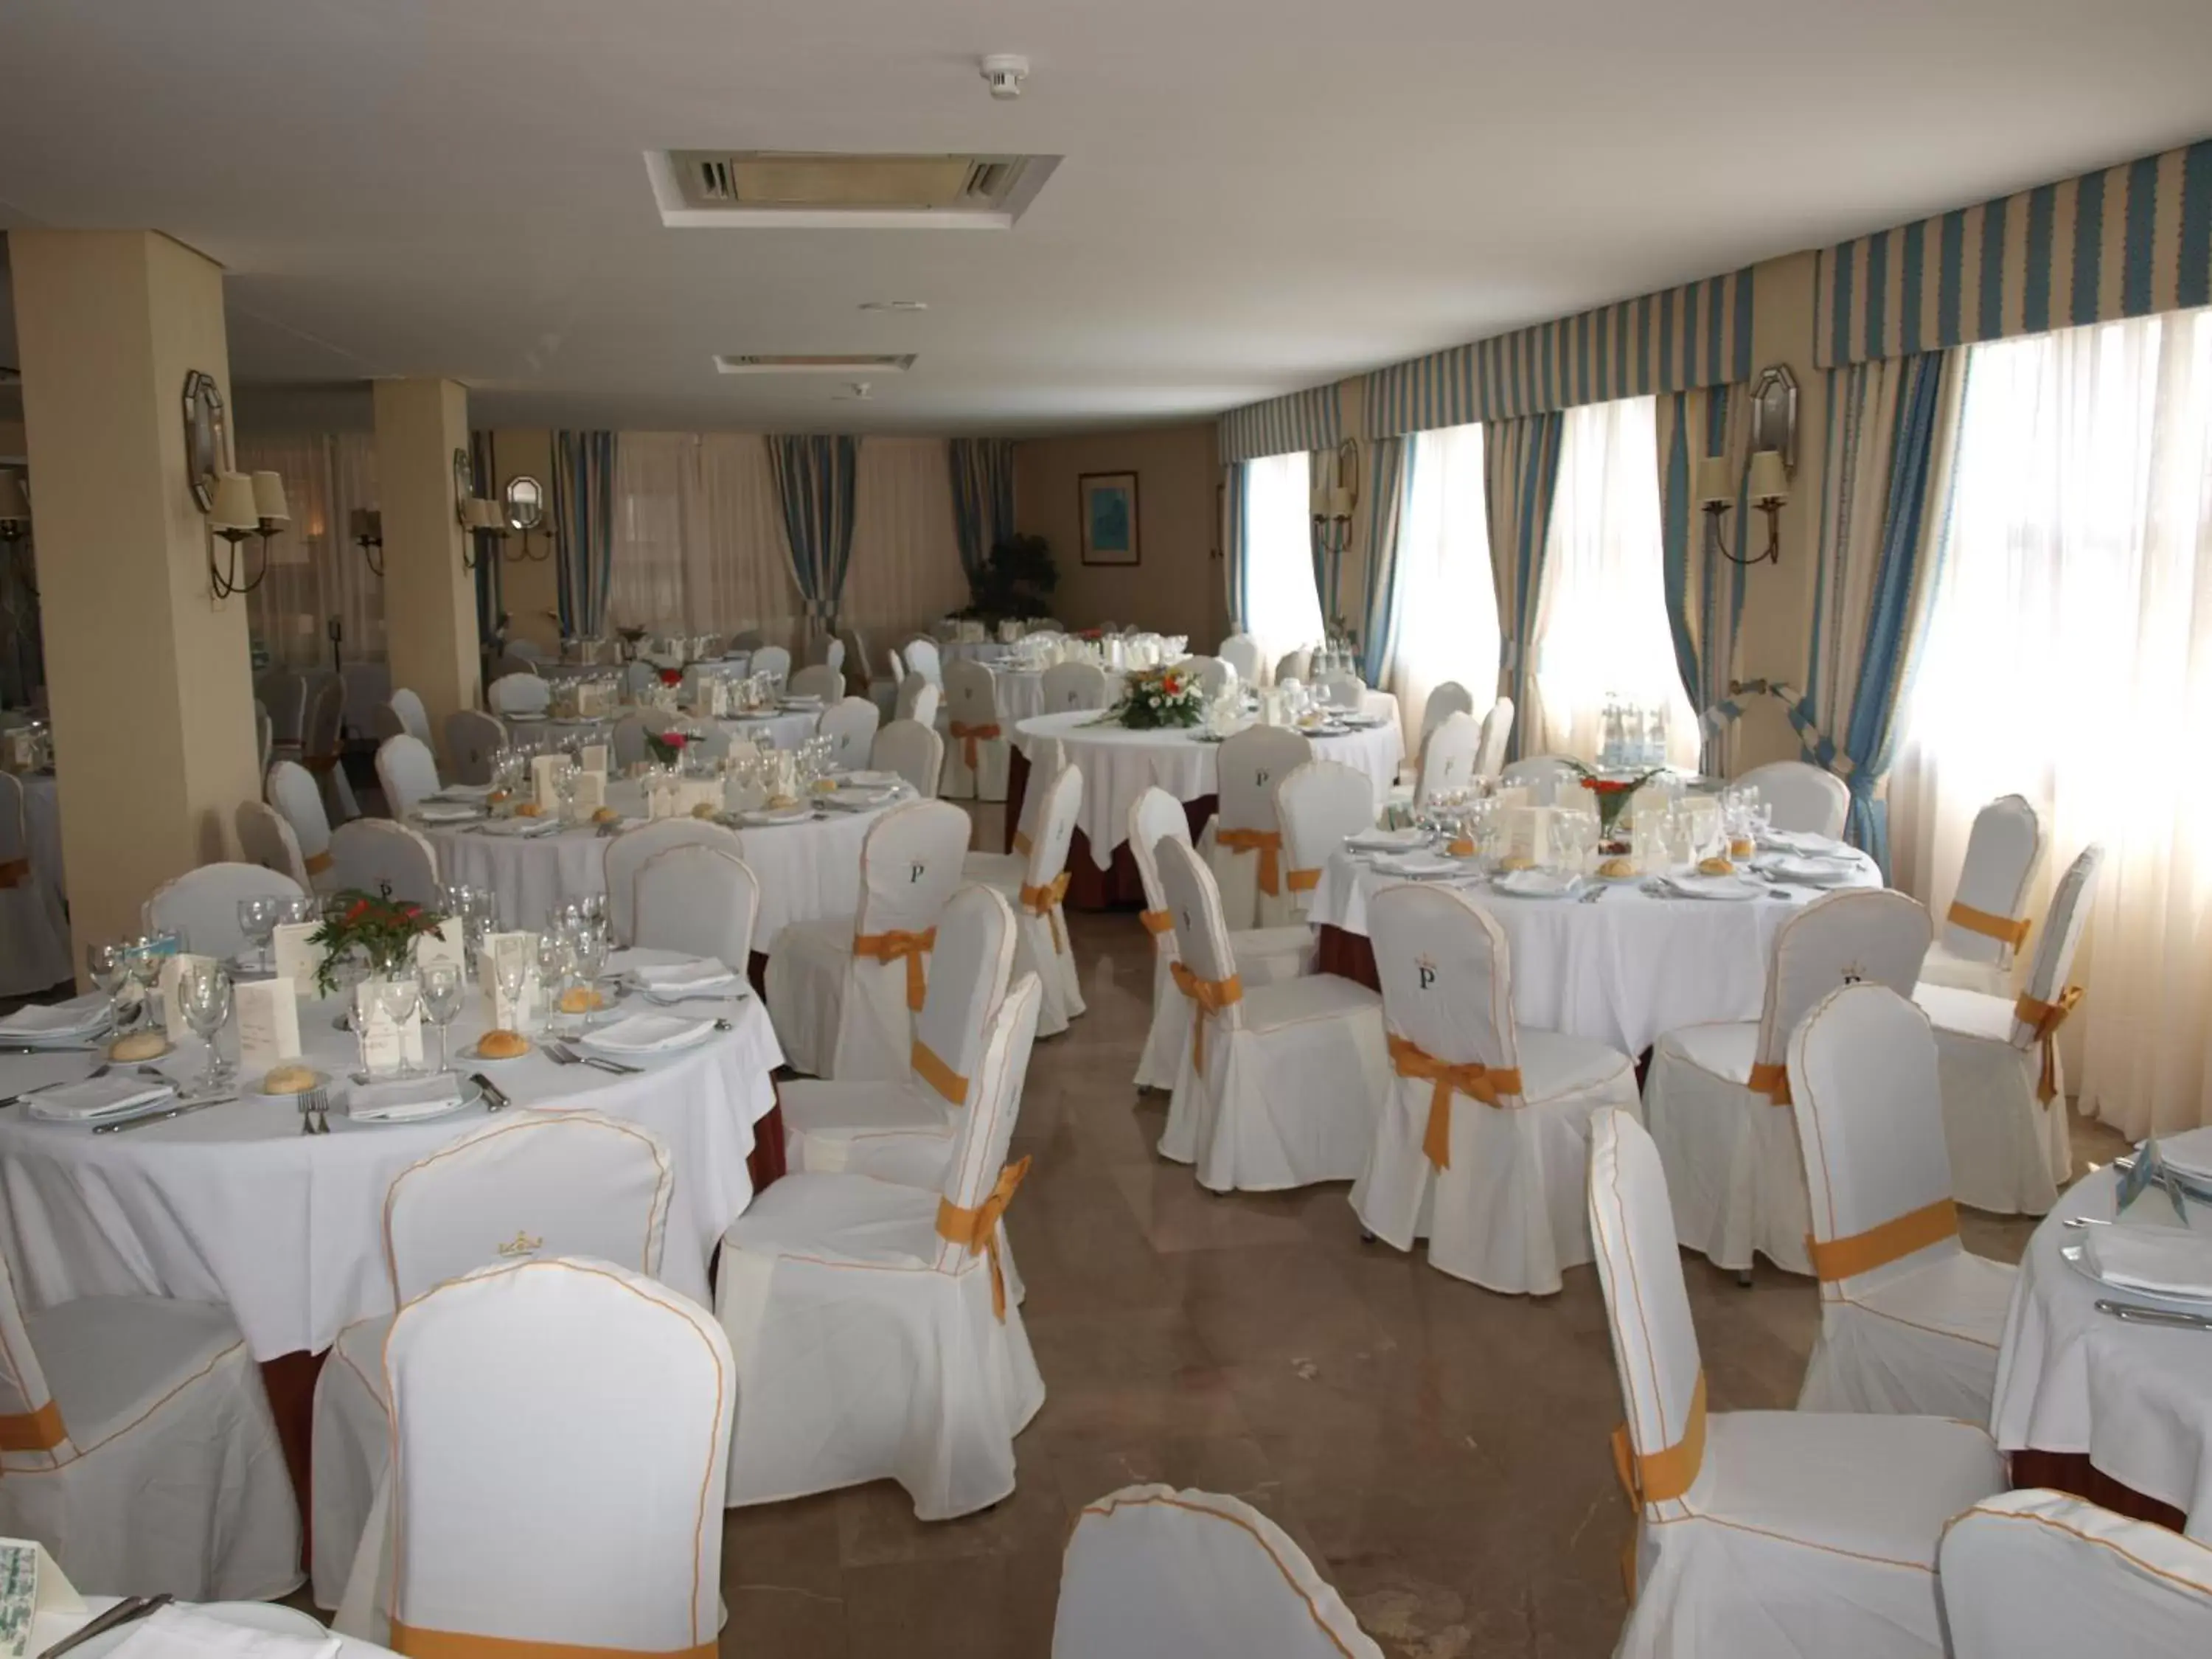 Banquet/Function facilities, Banquet Facilities in Parador de Melilla